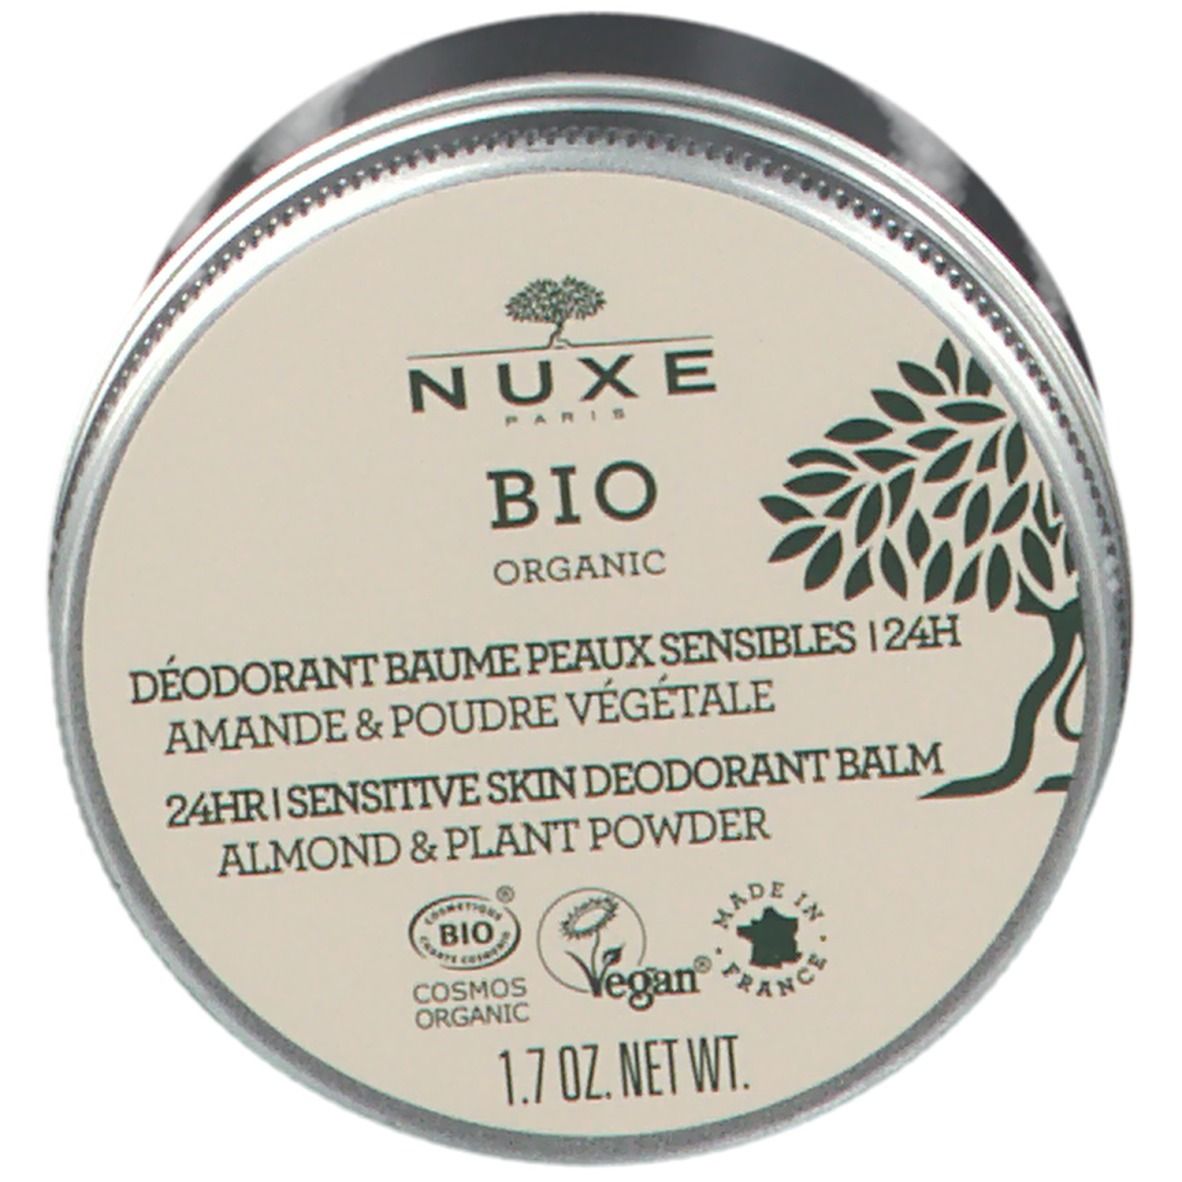 Nuxe Bio Organic Déodorant Baume Peaux Sensibles 24H